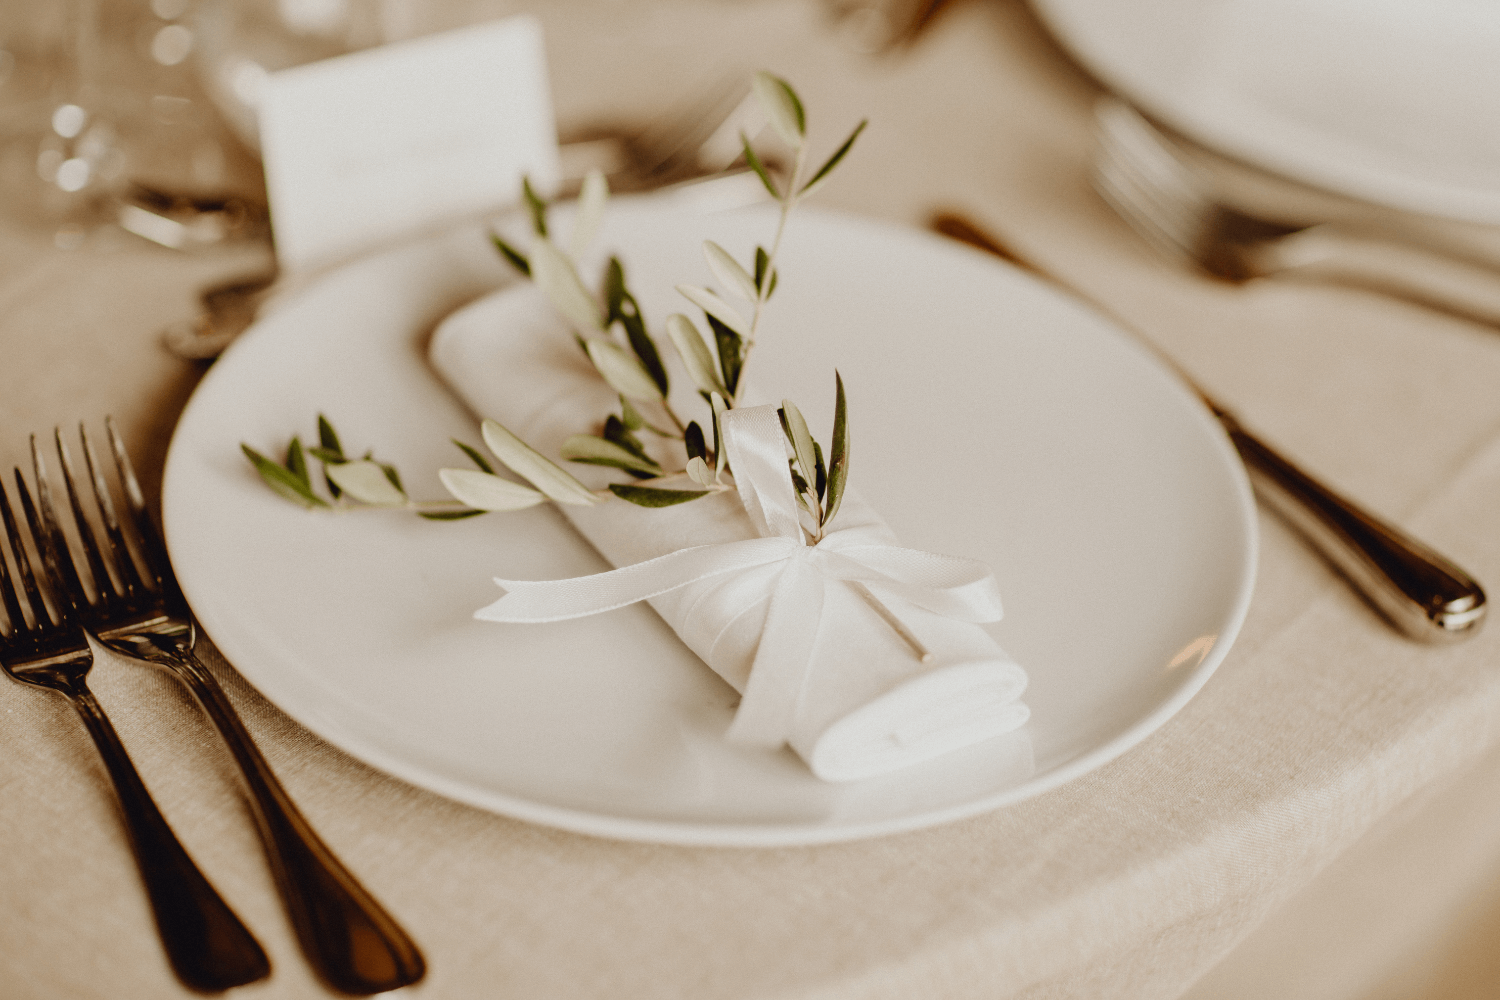 Une assiette blanche entourée de couverts argentés. Au milieu de l'assiette se trouve une serviette blanche, agrémentée d'un ruban blanc et de brins de feuilles.